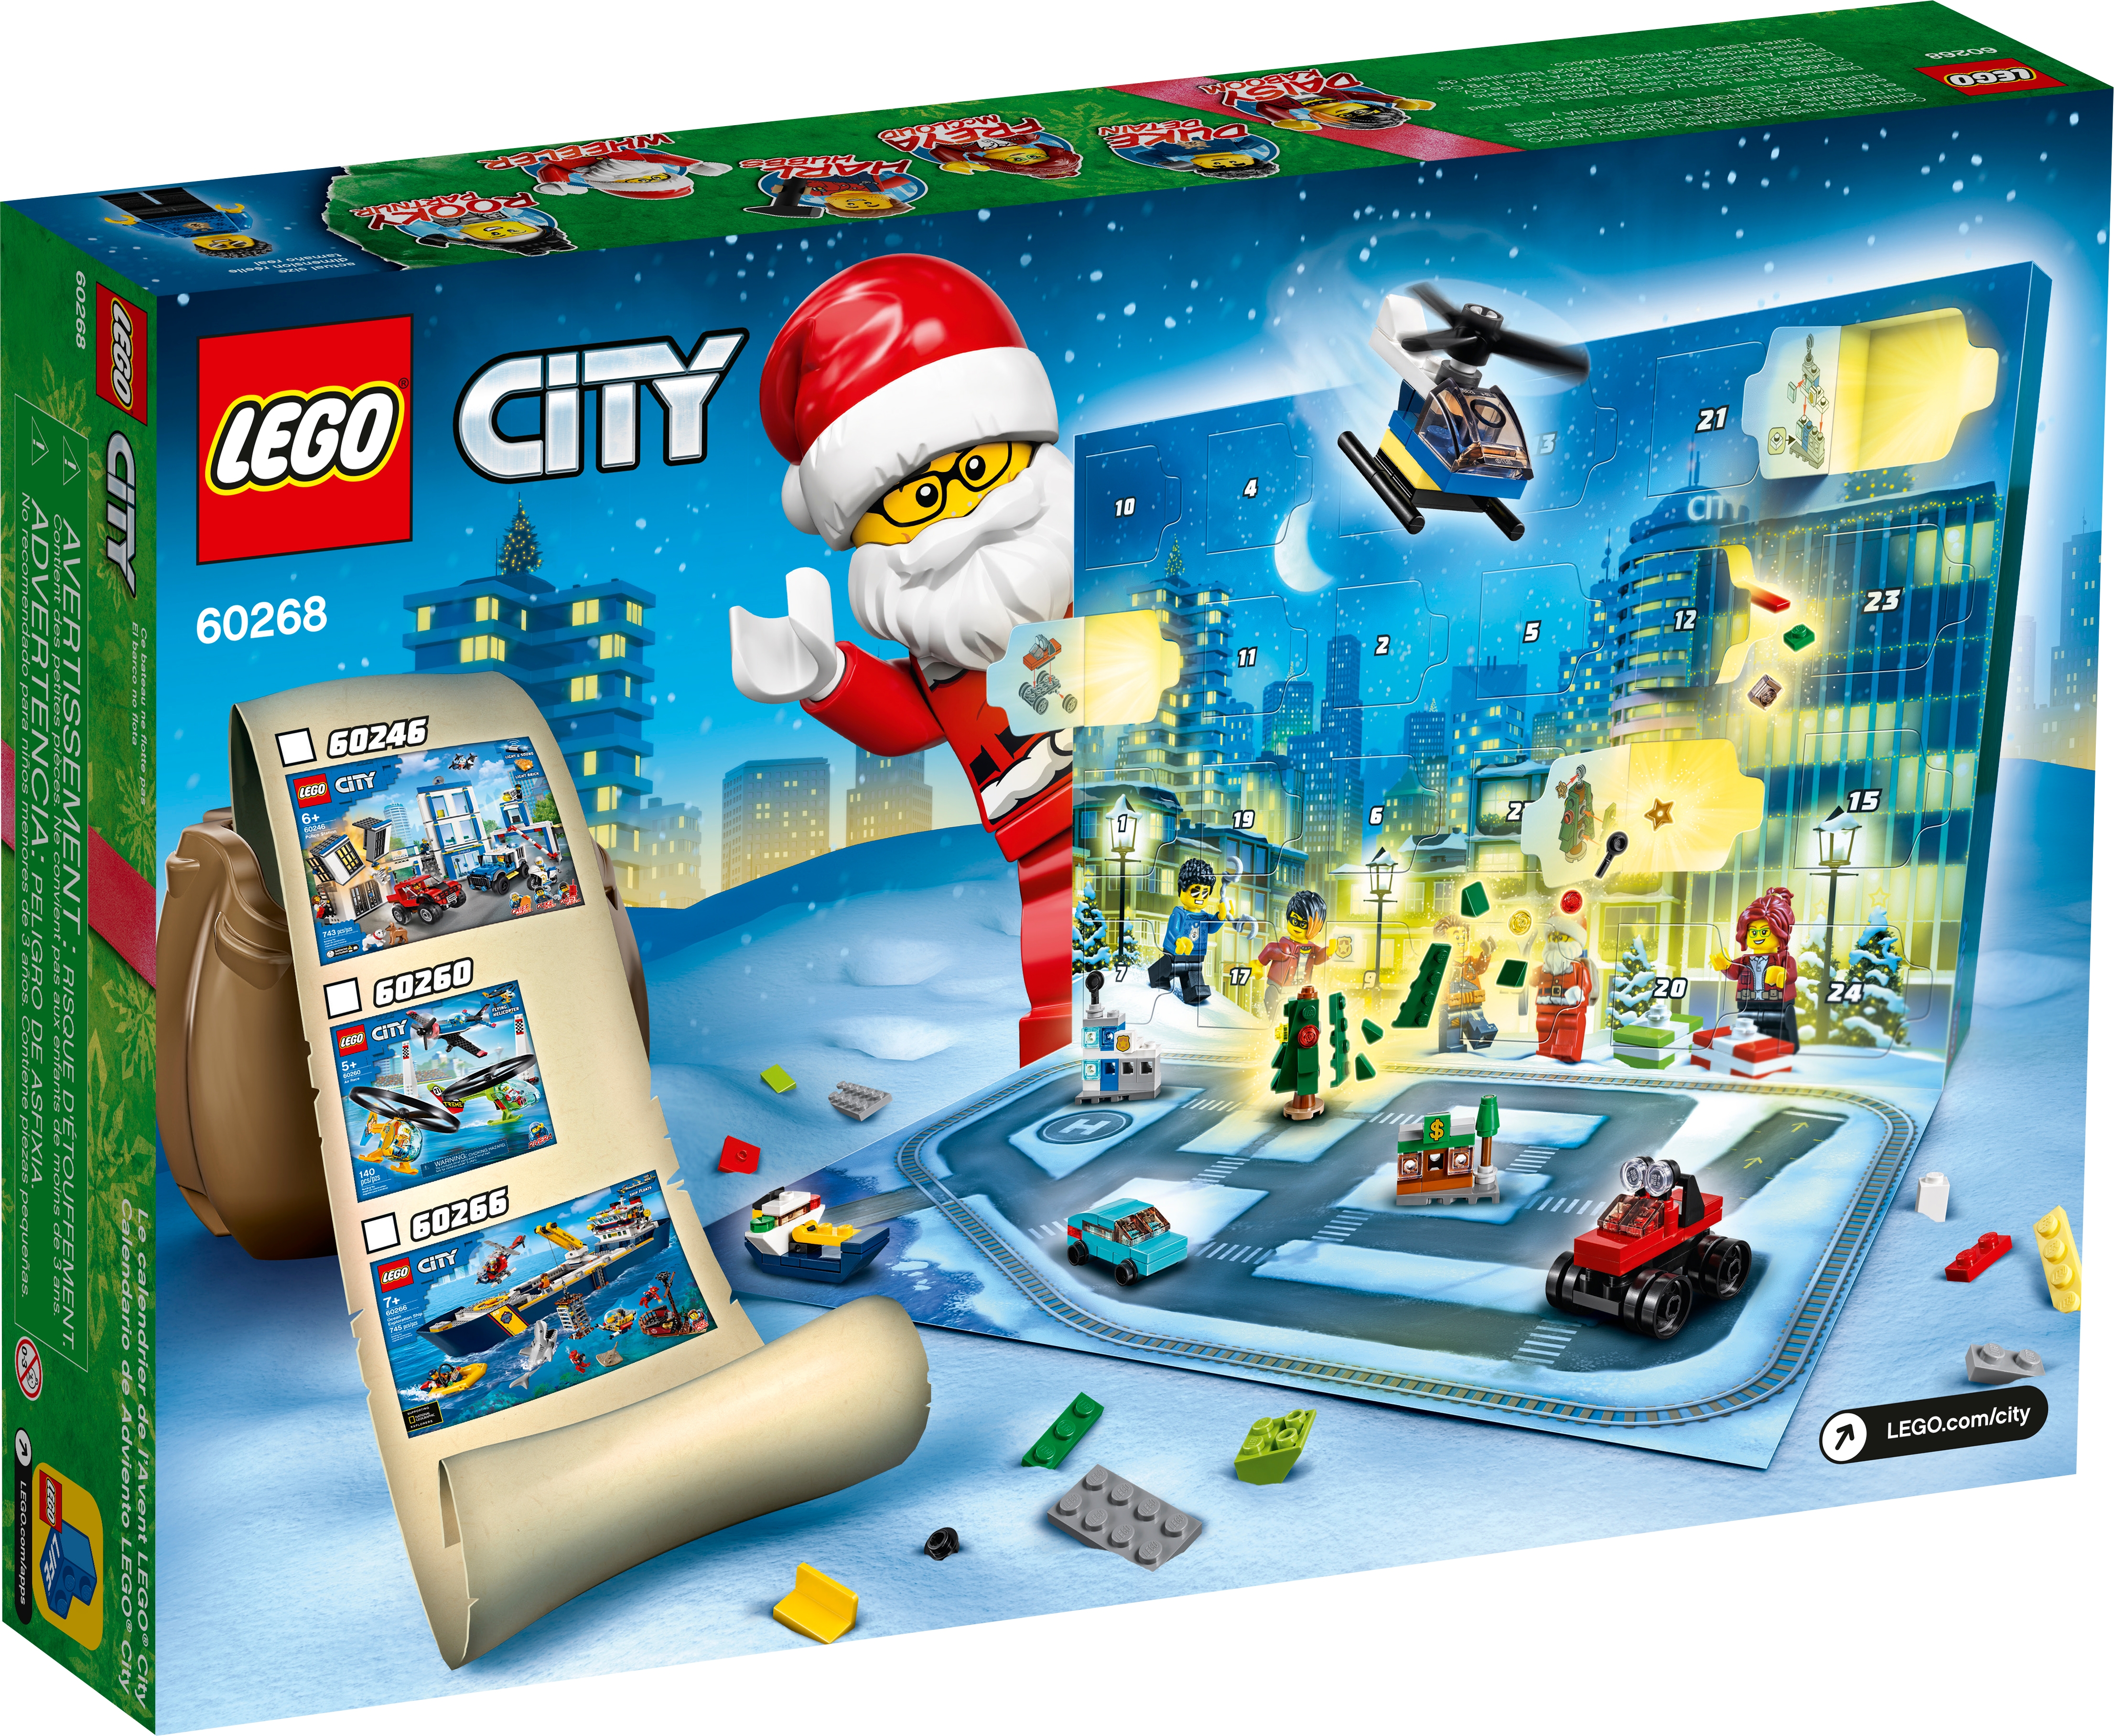 Lego City Advent Calendar 2020 60268 